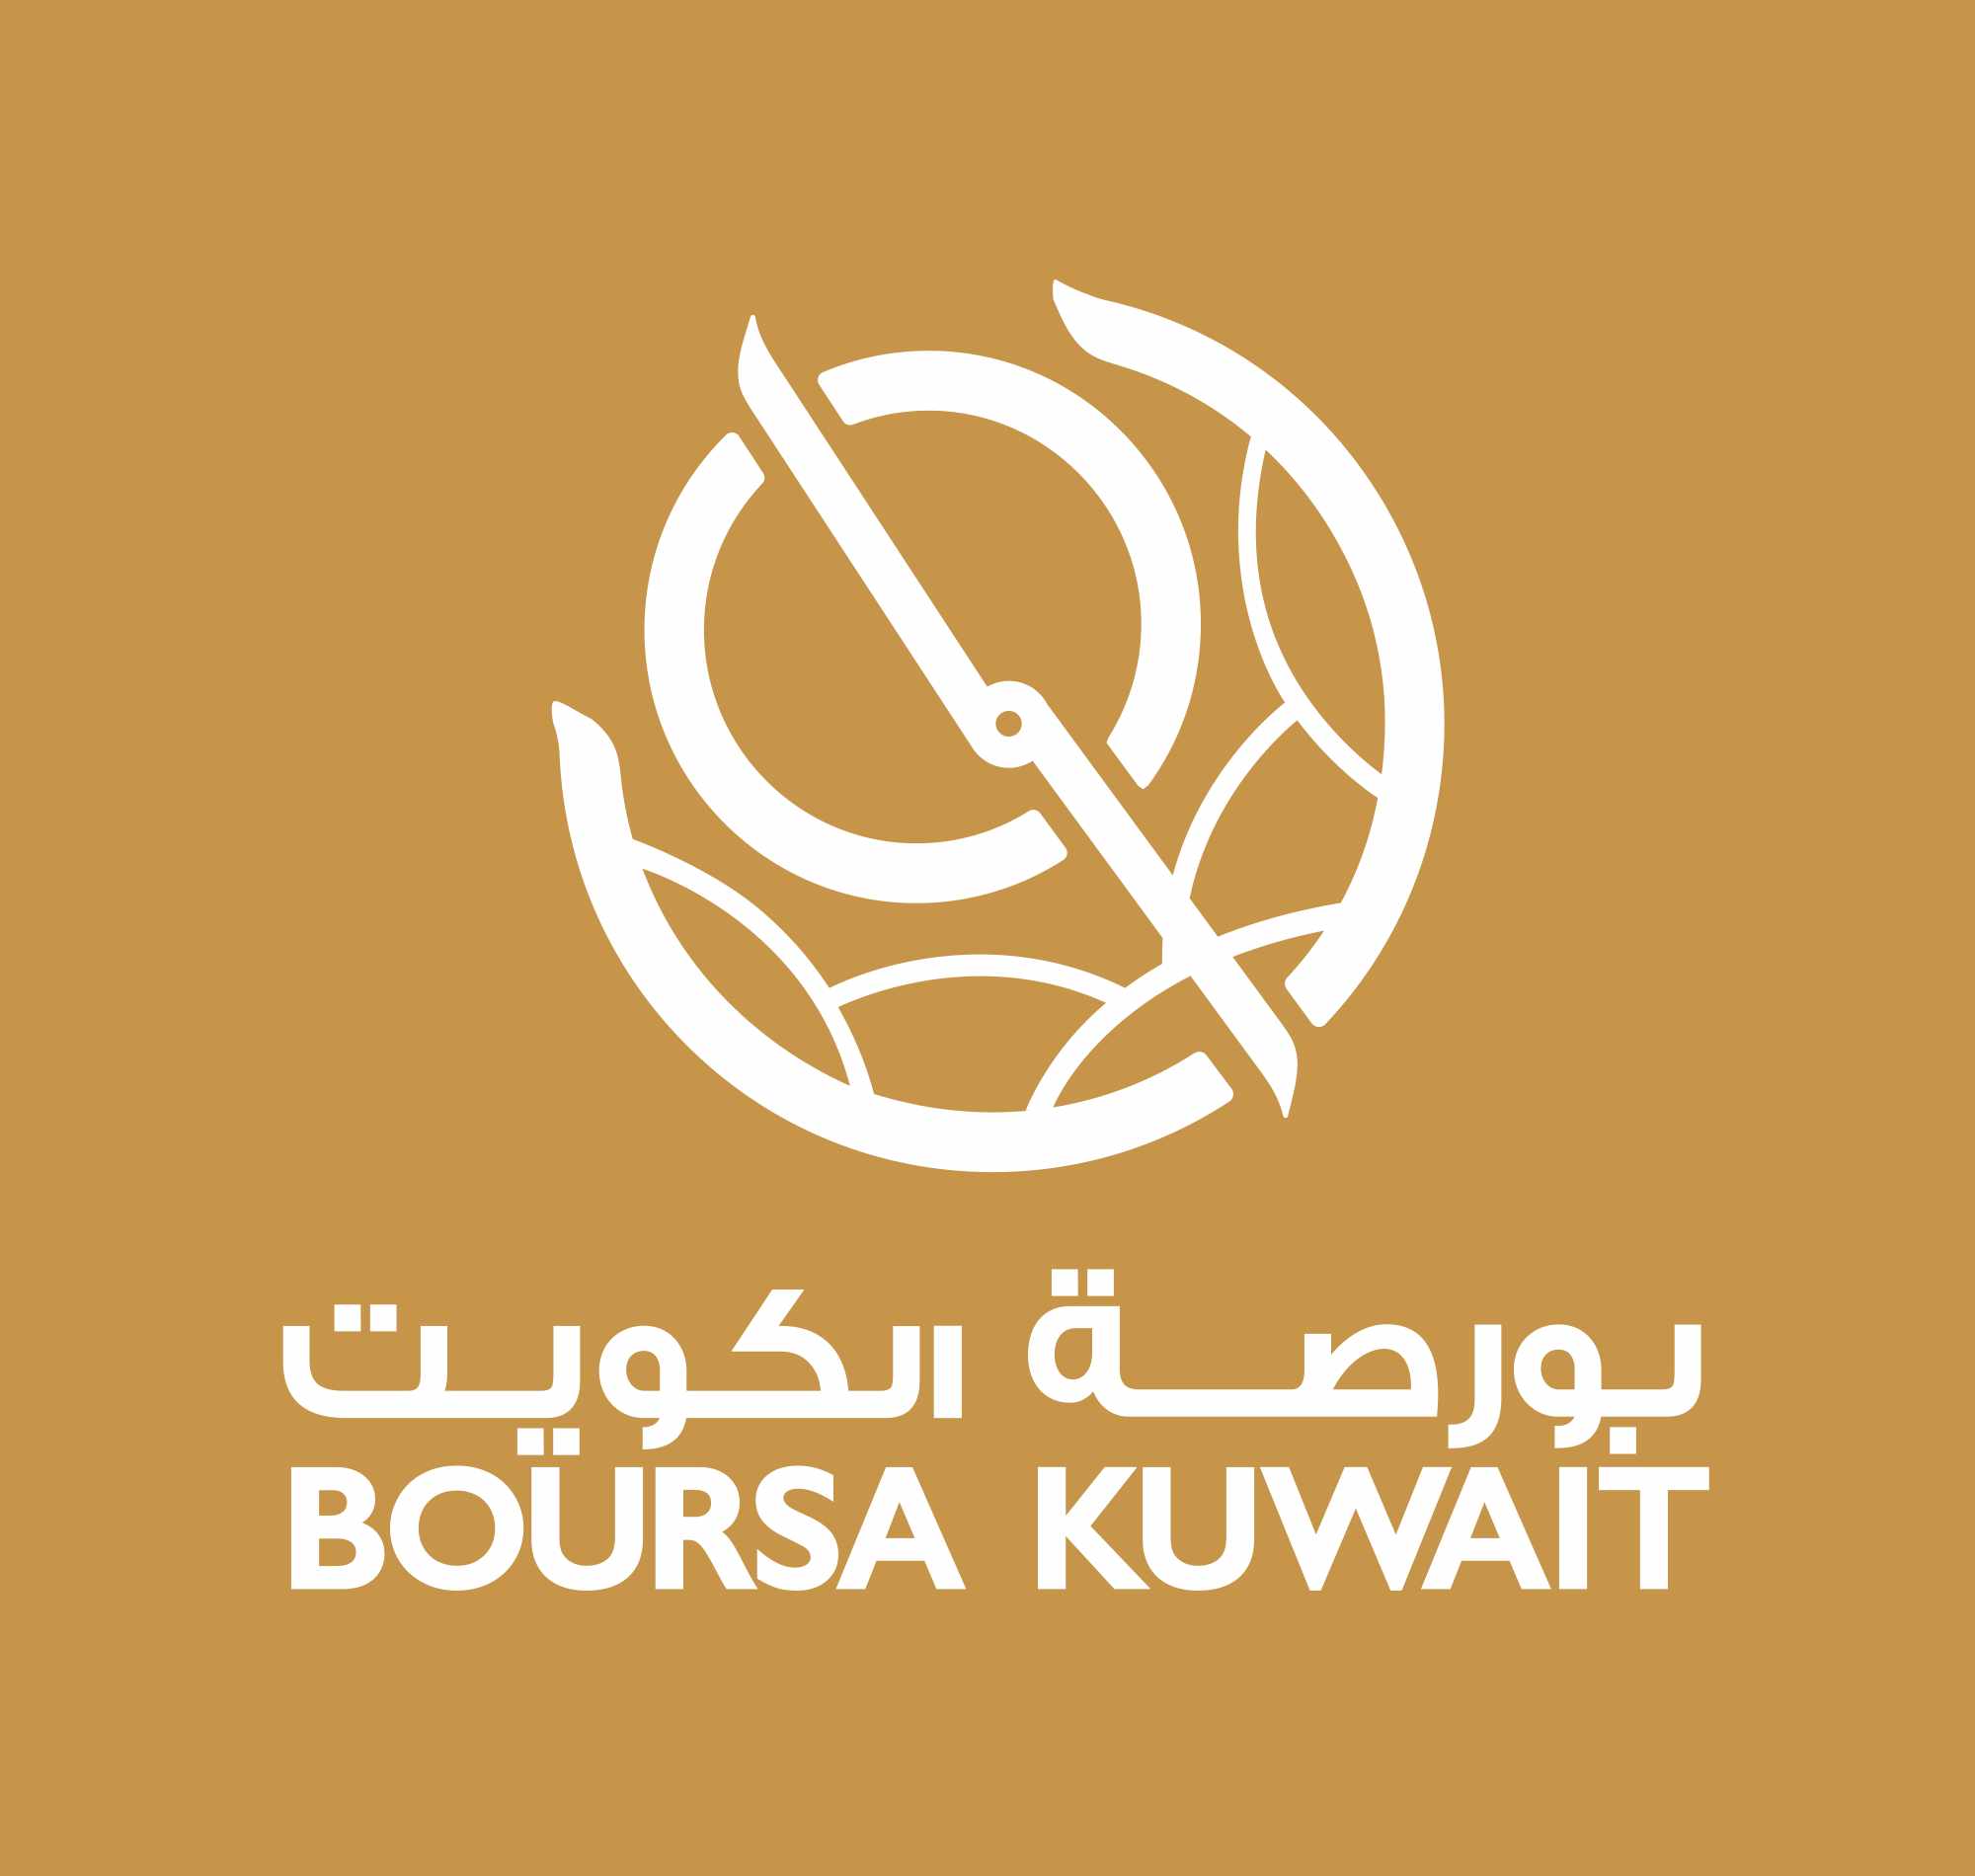 market,ownership,banks,declined,kuwaiti